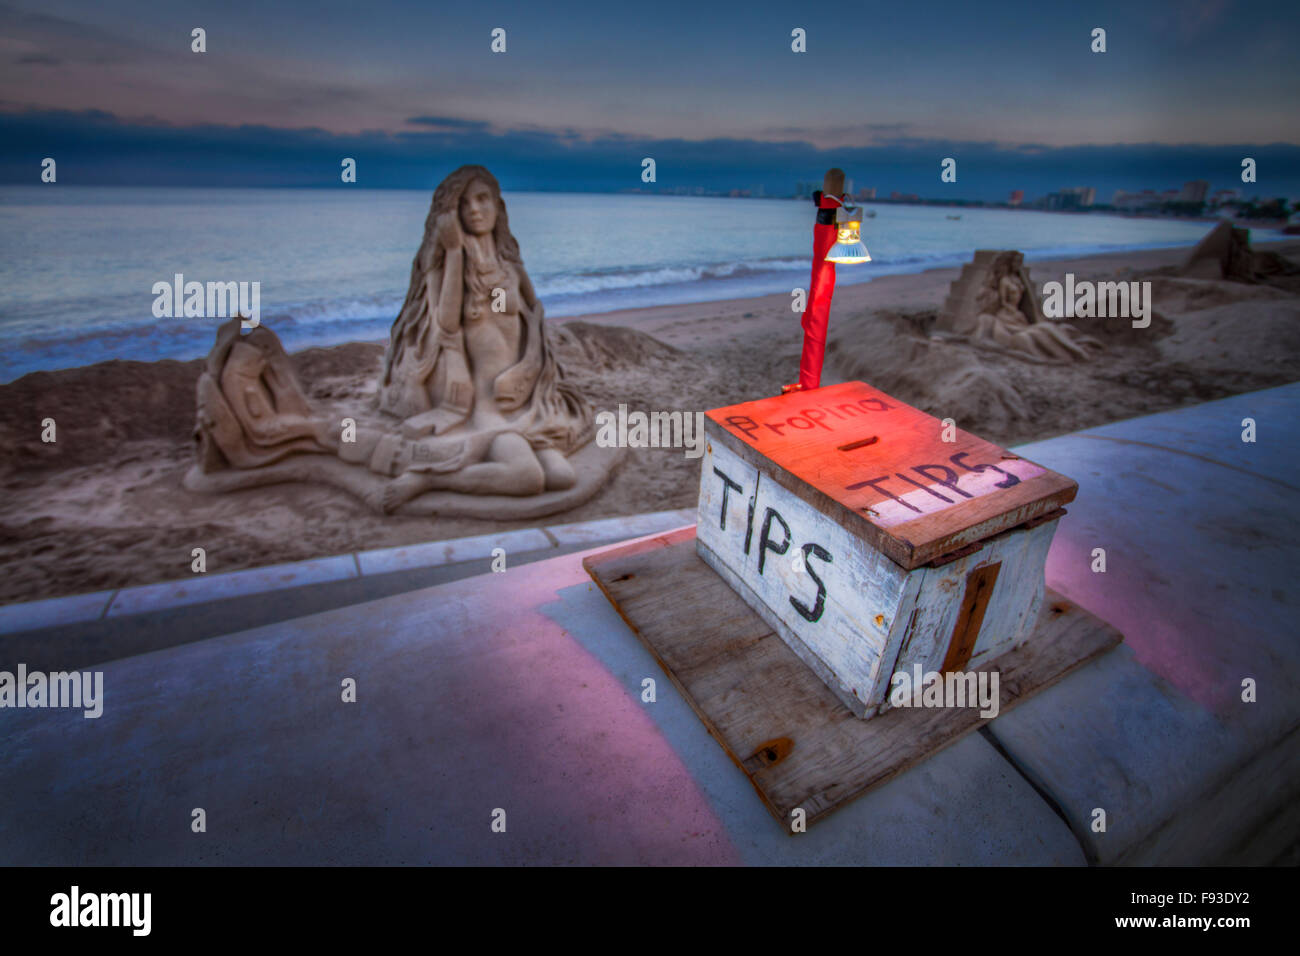 Un cuadro improvisado pide consejos de transeúntes de esculturas de arena en Puerto Vallarta, México. Foto de stock